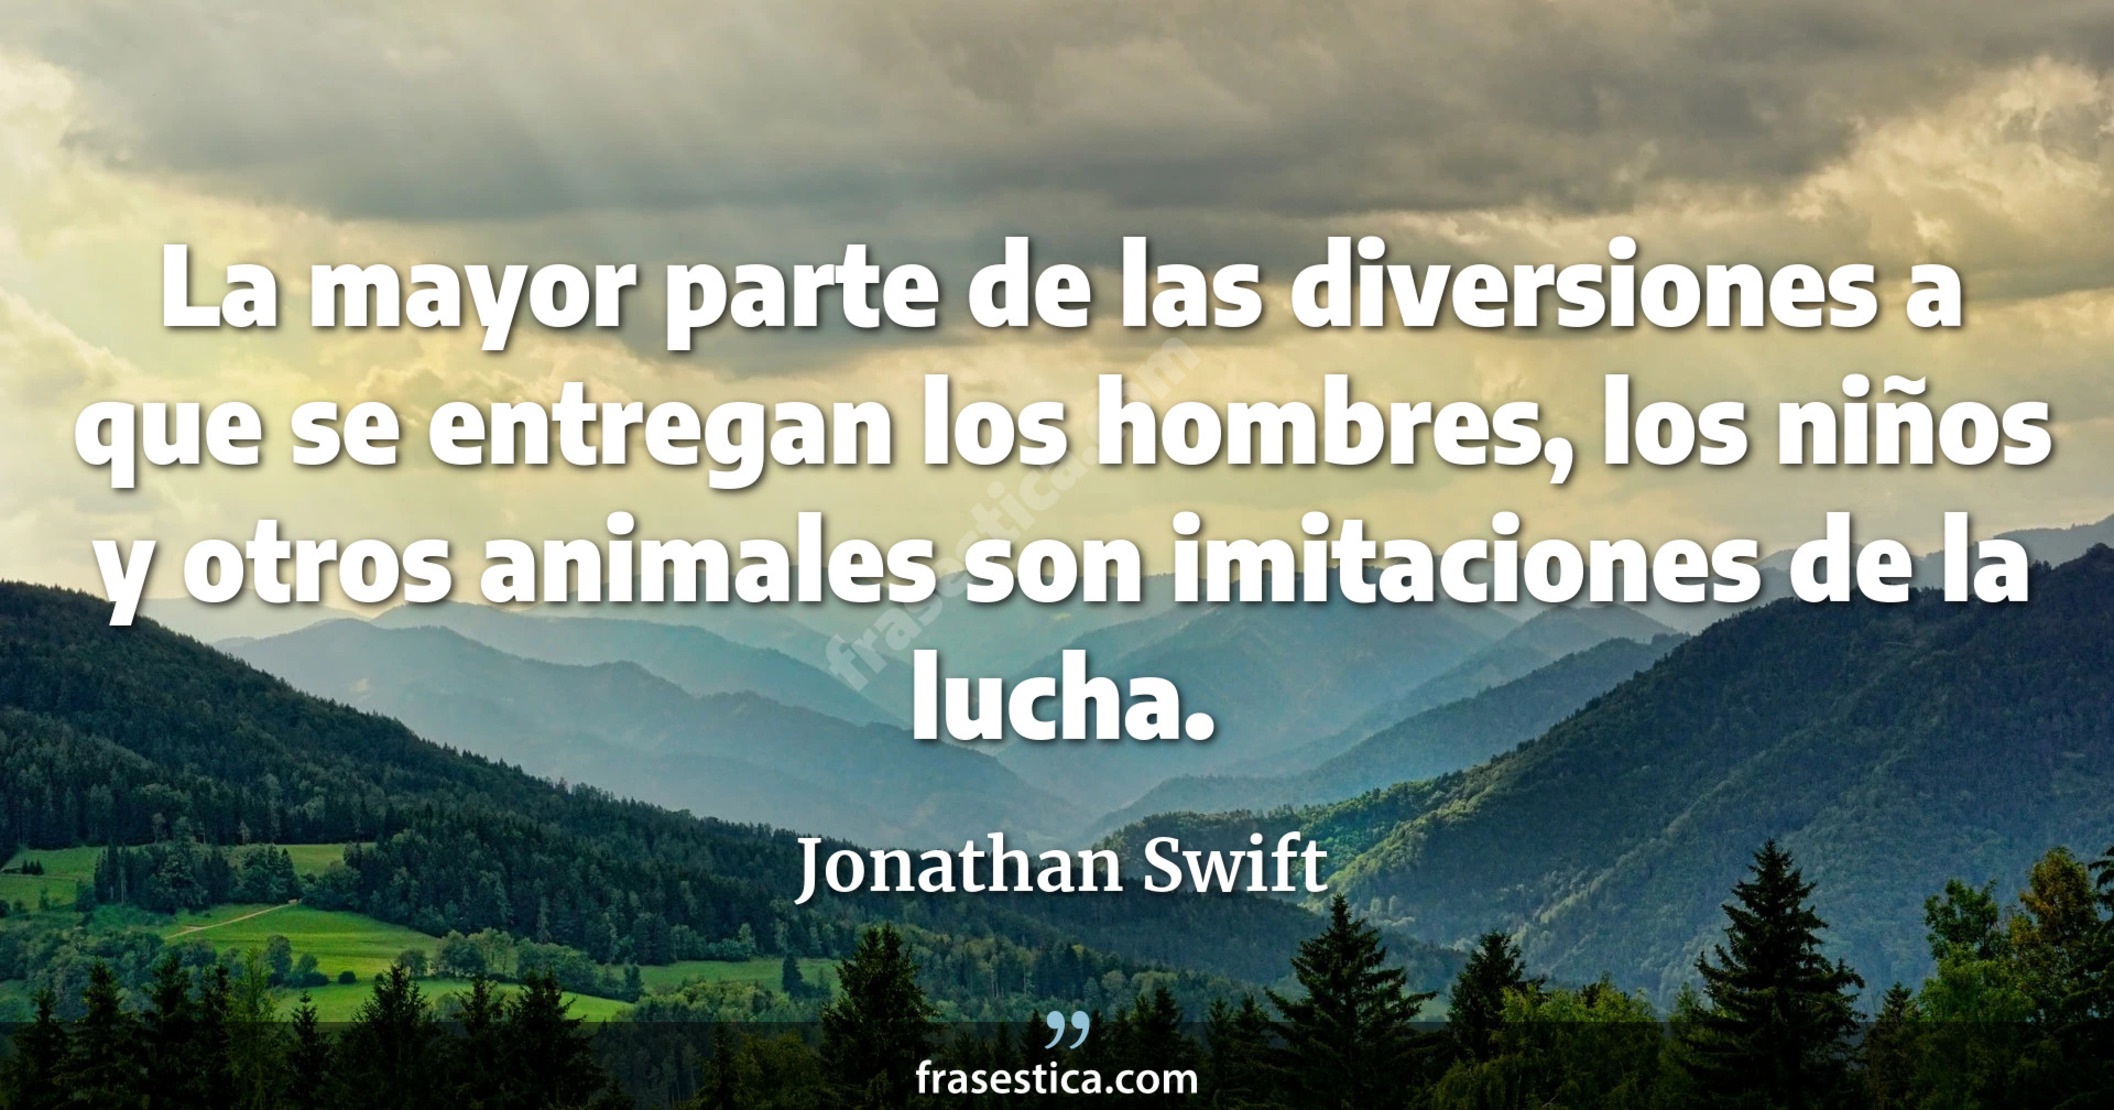 La mayor parte de las diversiones a que se entregan los hombres, los niños y otros animales son imitaciones de la lucha. - Jonathan Swift